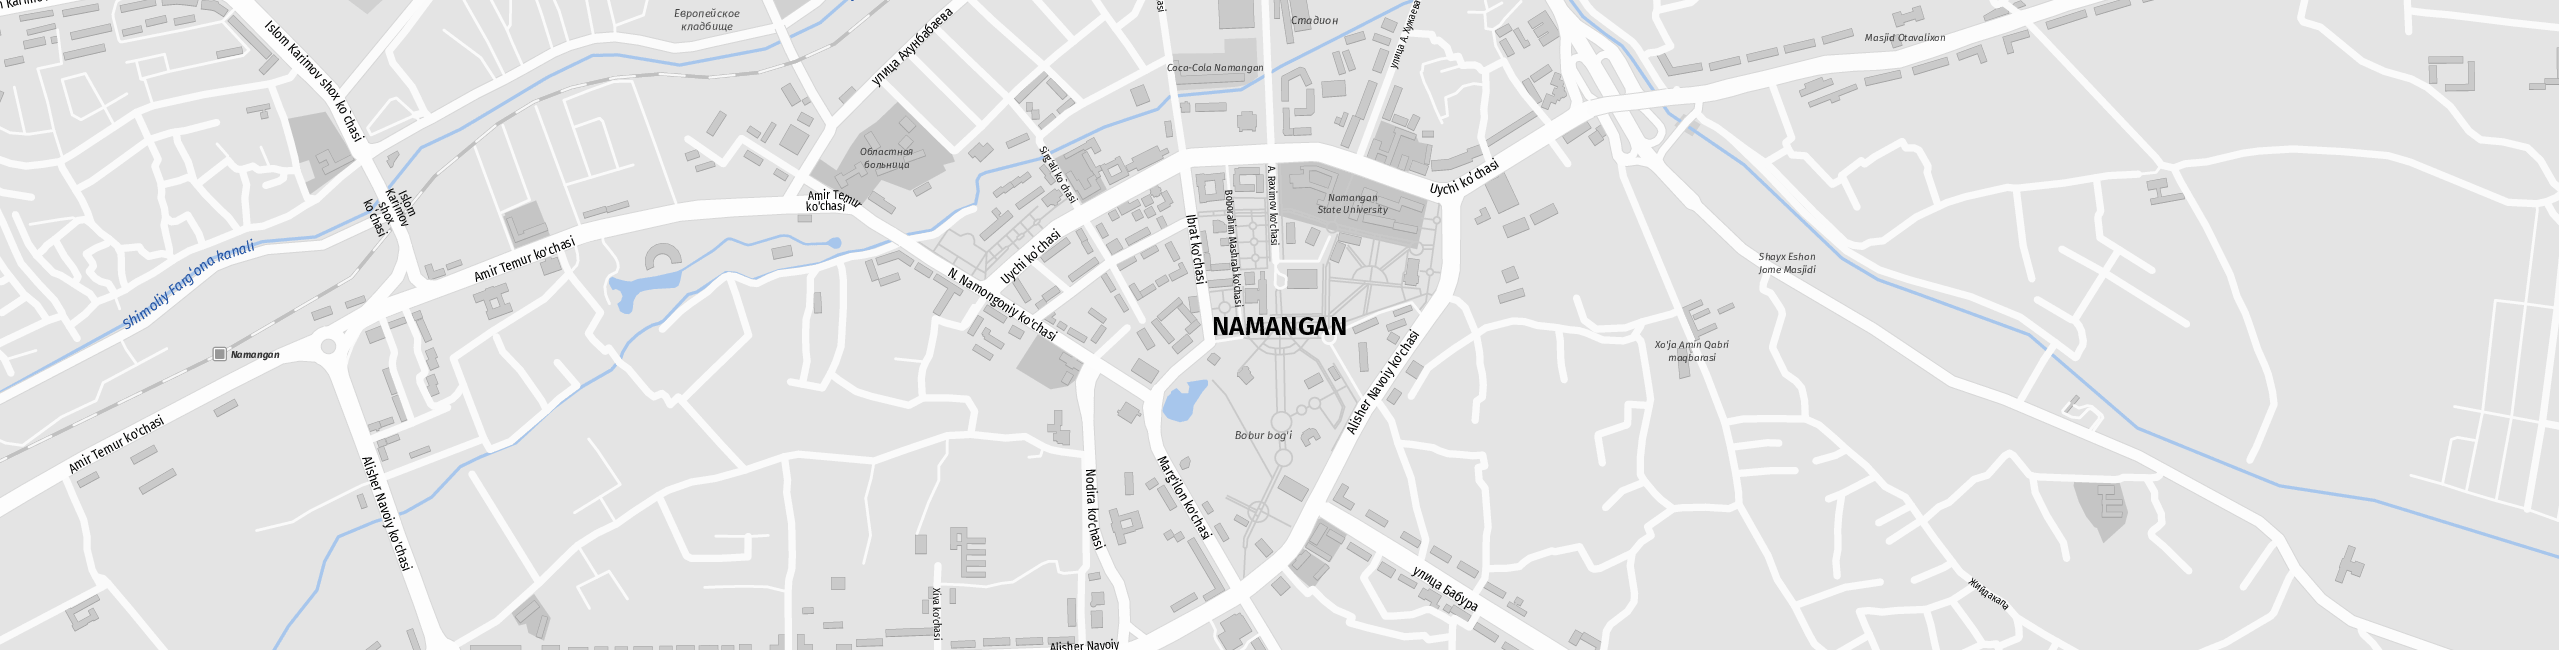 Stadtplan Namangan zum Downloaden.